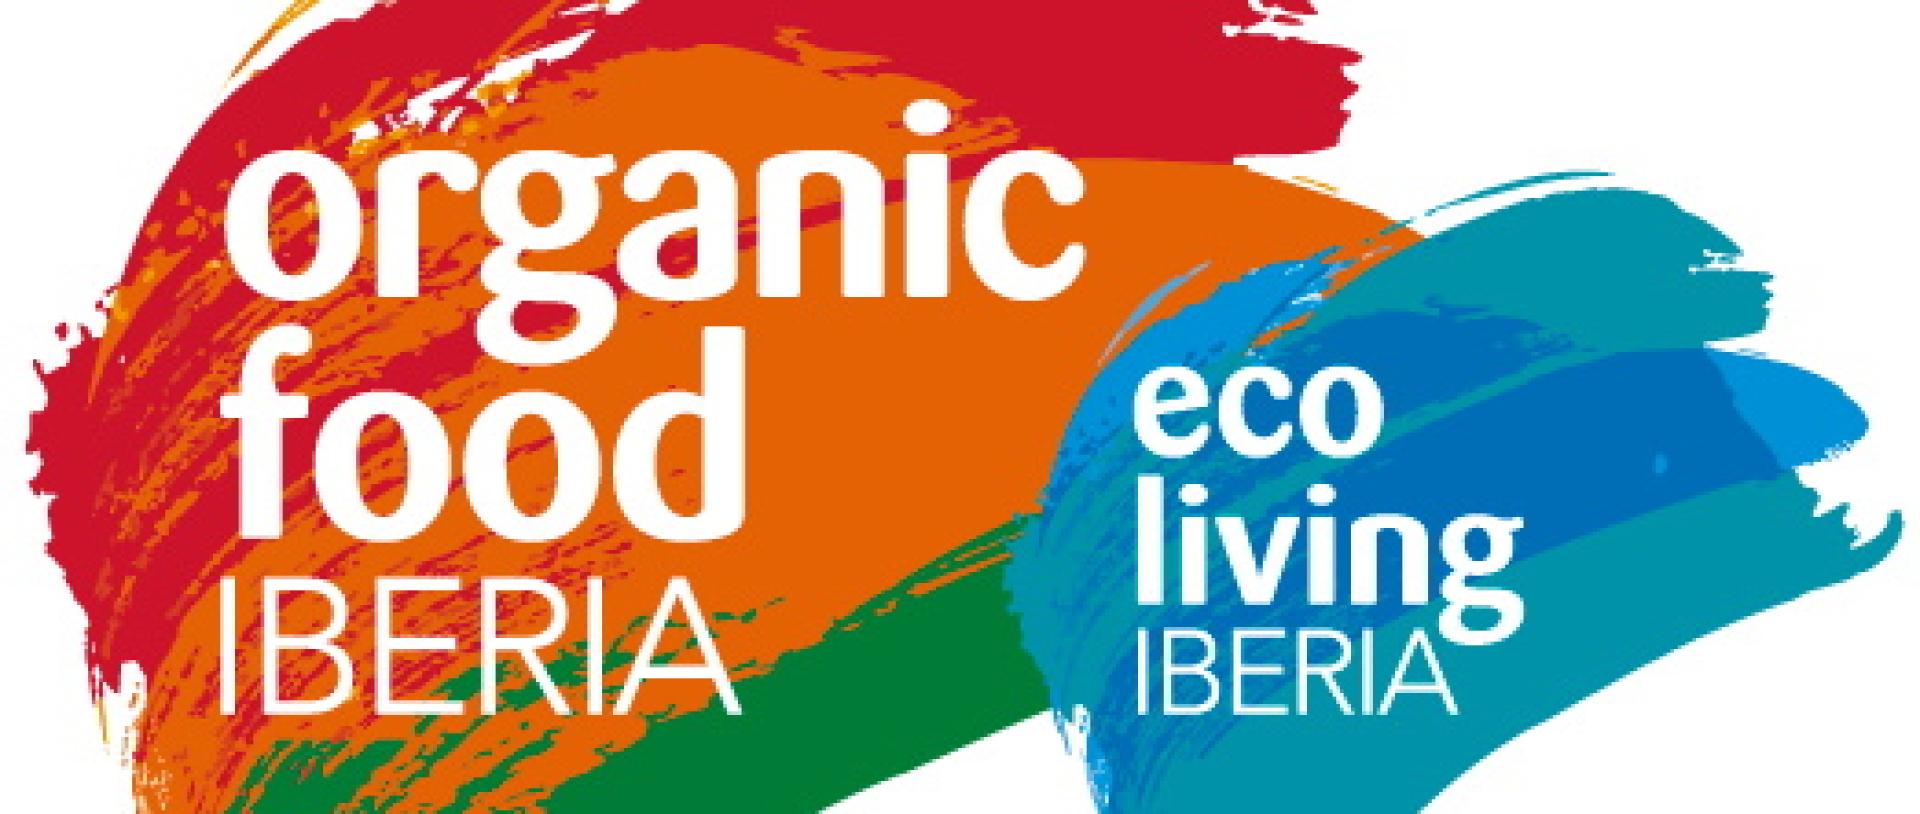 Rozstrzygnięcie naboru przedsiębiorstw na stoisko regionalne Województwa Wielkopolskiego  na targach Organic Food Iberia 2022, Madryt (Hiszpania) - zobacz więcej